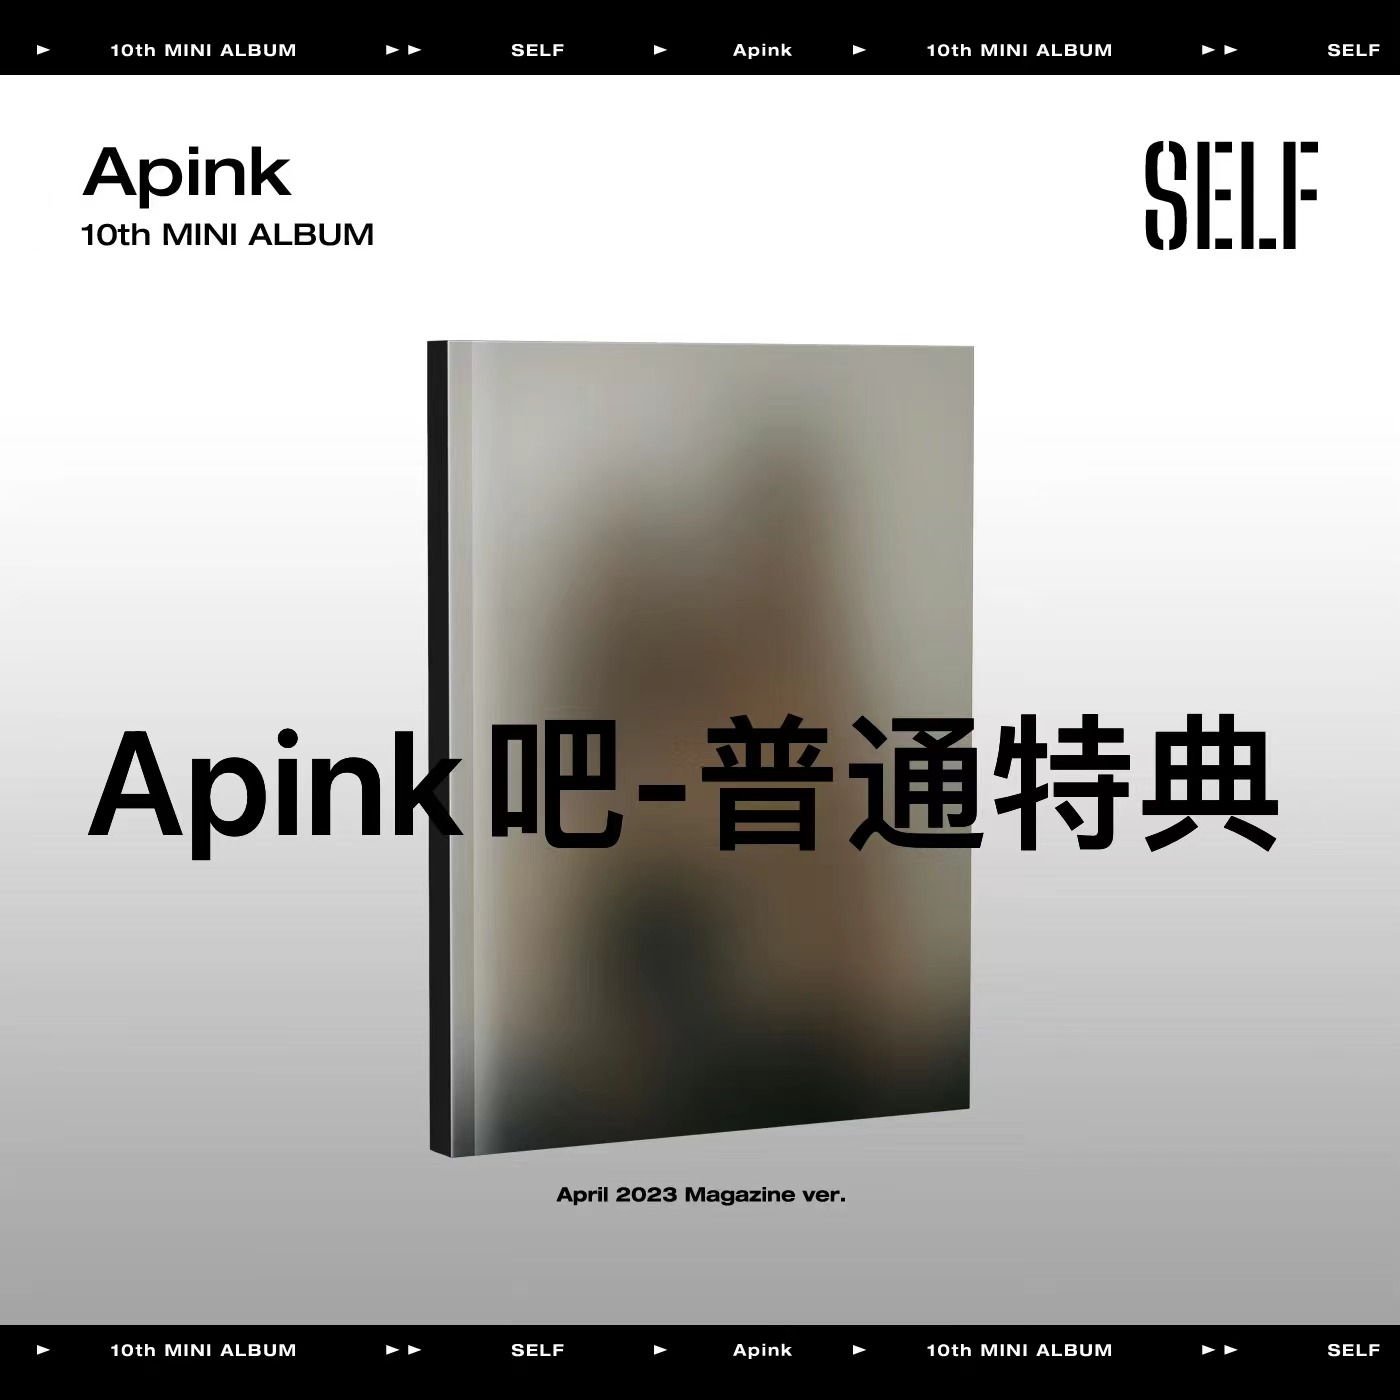 [全款 普通特典专 第二批(截止至4.11早7点)] Apink - 迷你10辑 [SELF] (April 2023 Magazine Ver.)_ APINK吧官博